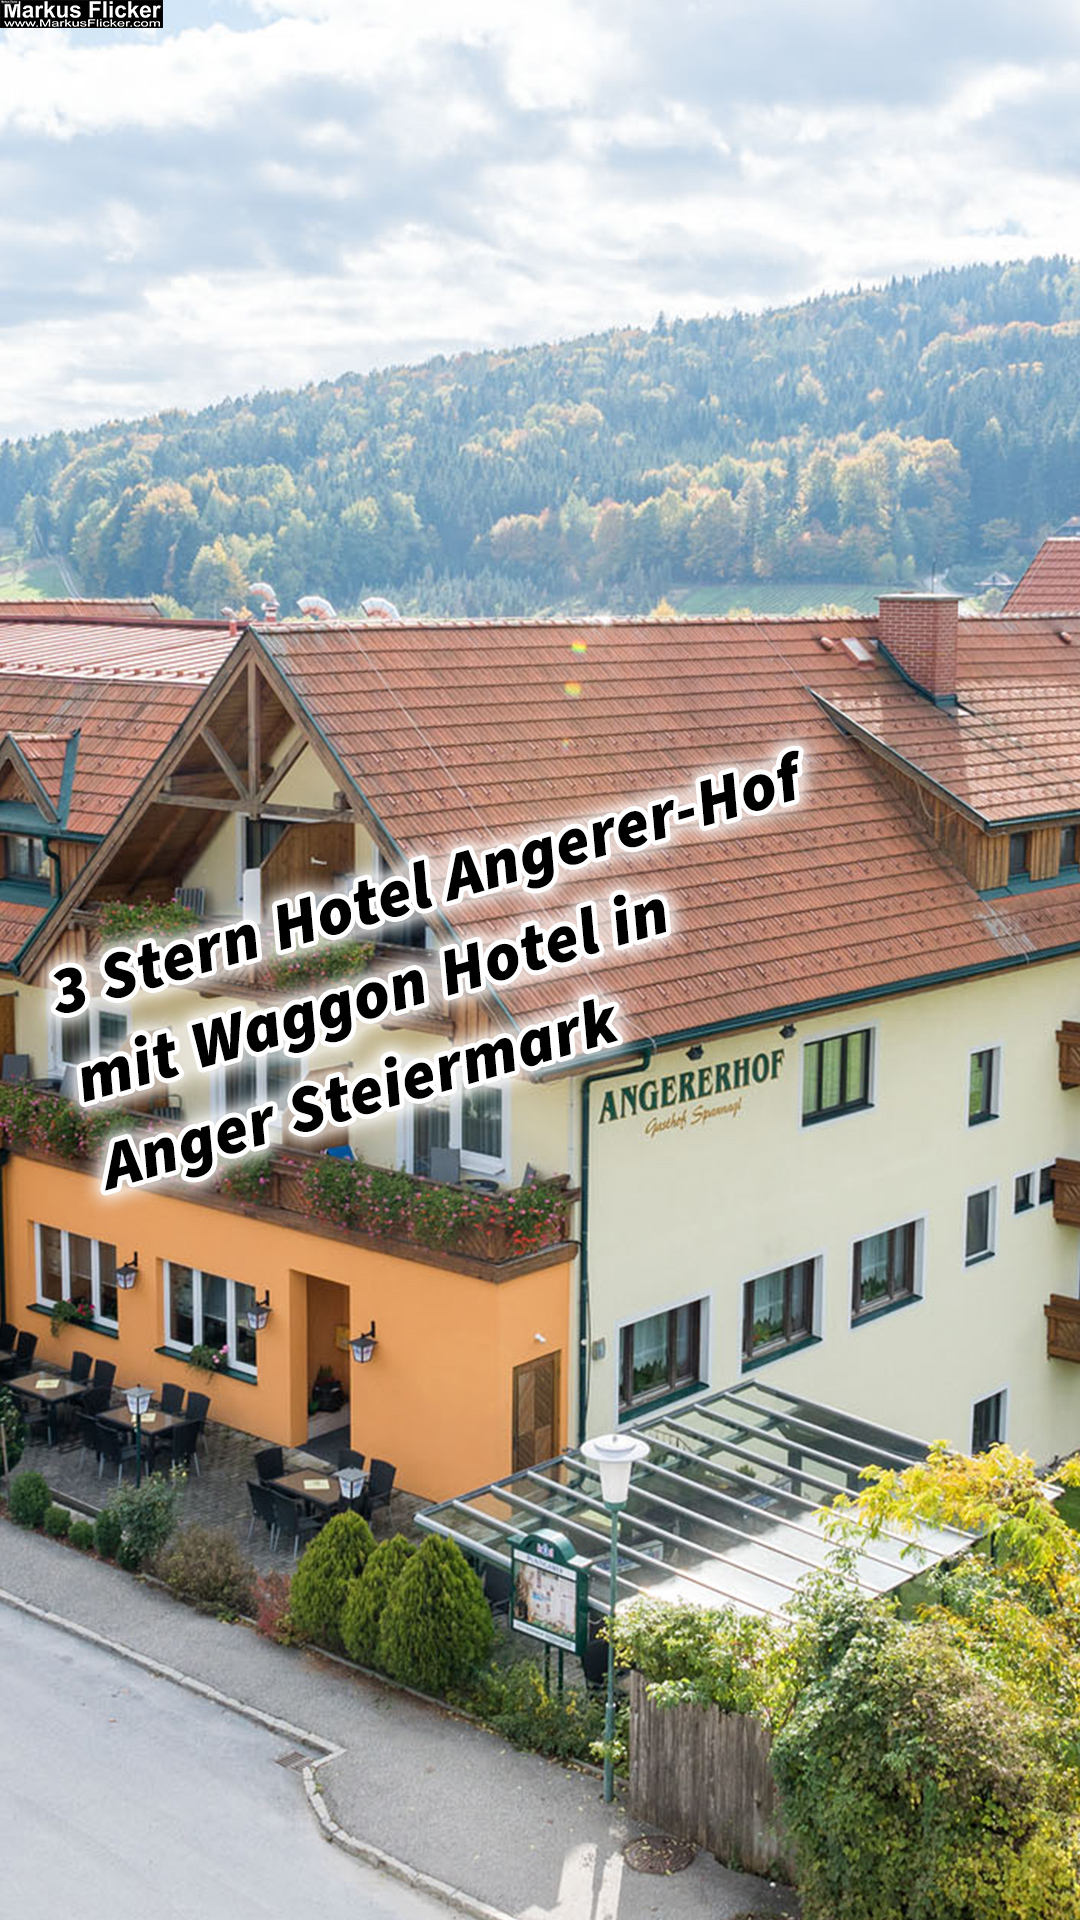 3 Stern Hotel Angerer-Hof mit Waggon Hotel in Anger Steiermark Österreich